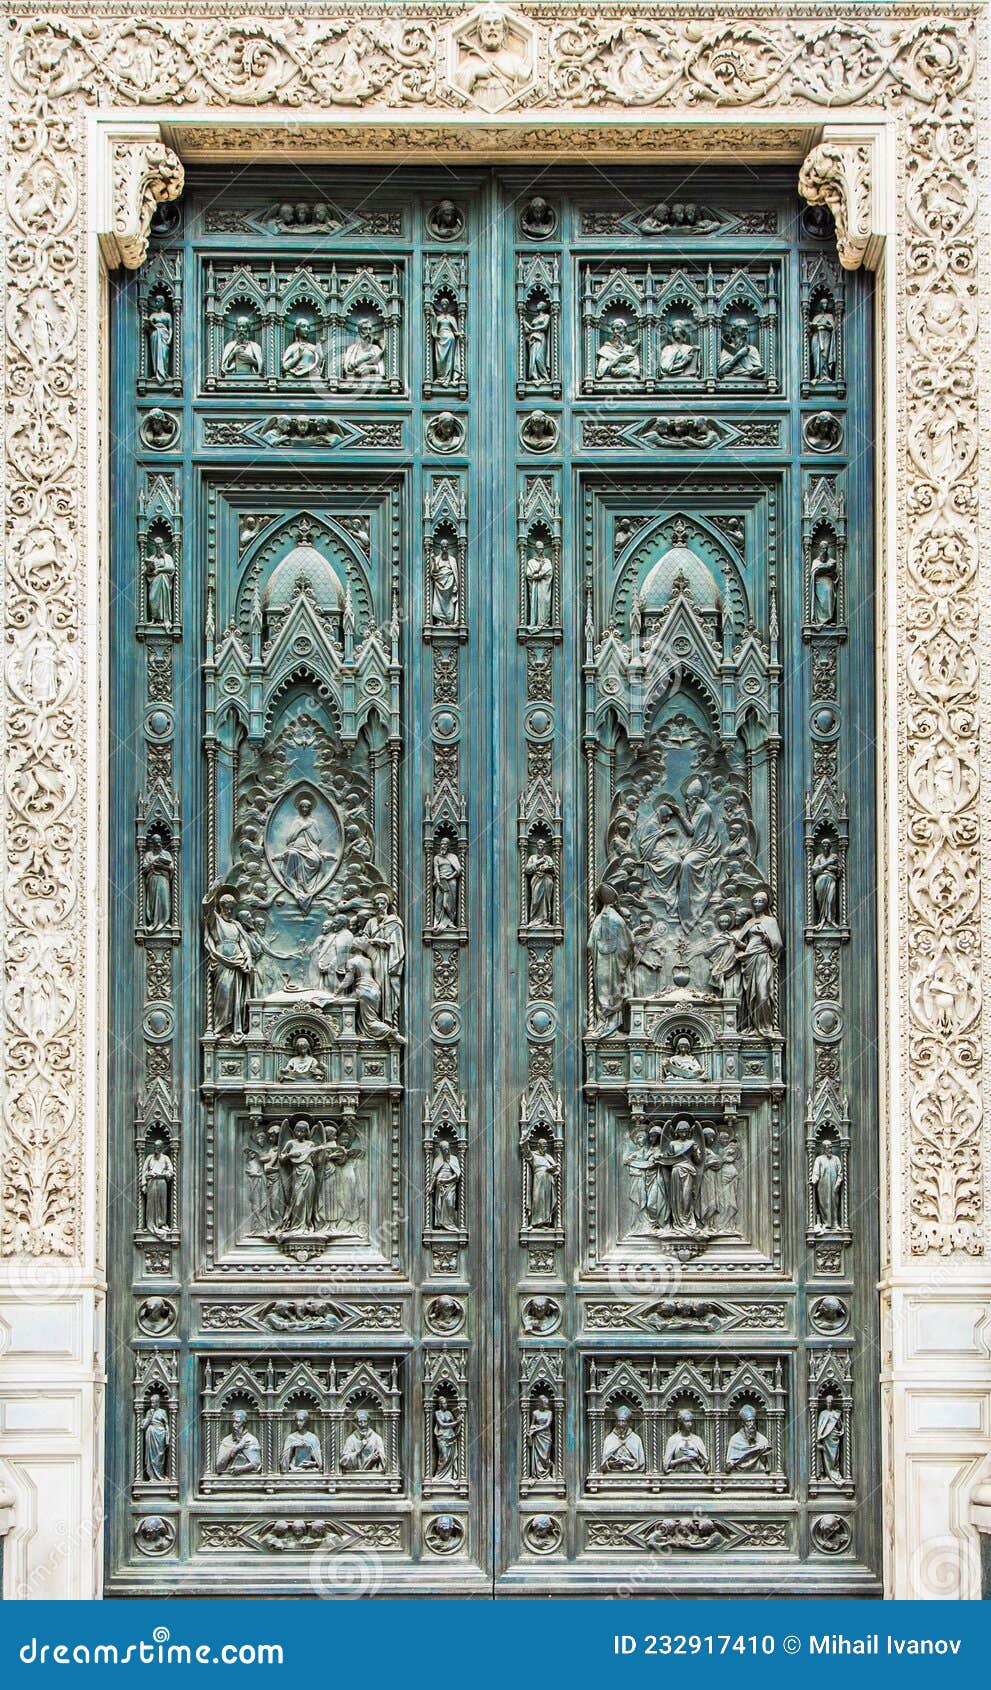 main door of cathedral of santa maria del fiore or cattedrale di santa maria del fiore